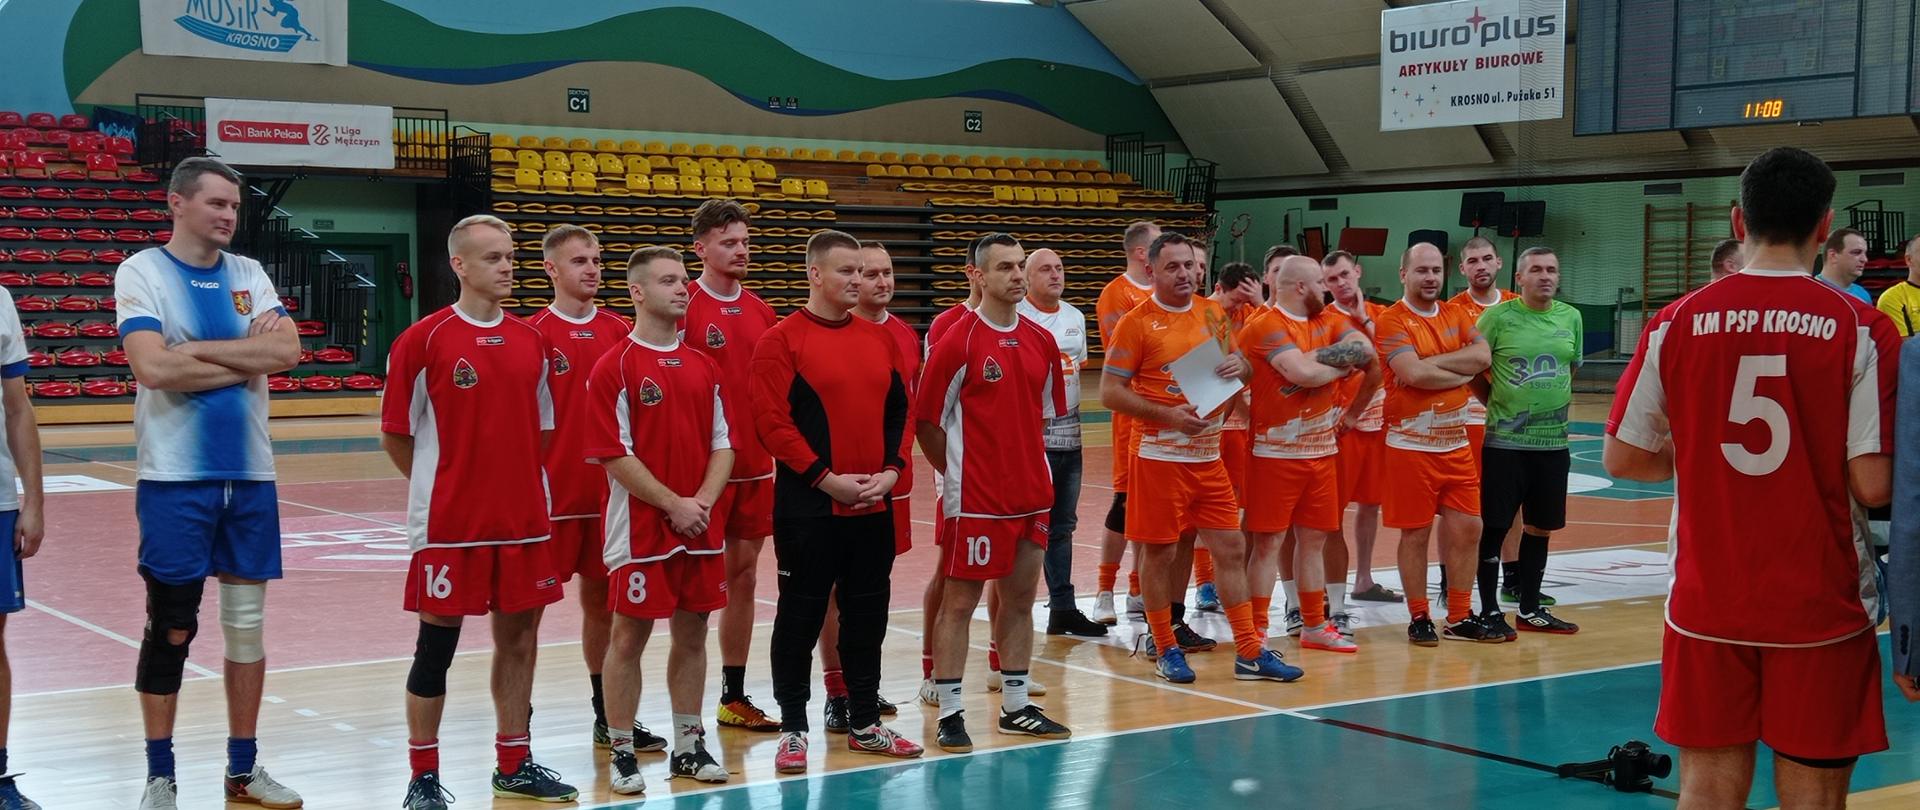 Na zdjęciu widoczna jest reprezentacja KM PSP Krosno w futsalu oraz reprezentacja innego zakładu z powiatu Krośnieńskiego. Zawodnicy brali udział w turnieju o Puchar Dyrektora MOSiR Krosno. Zawodnicy stoją w strojach sportowych na hali sportowej